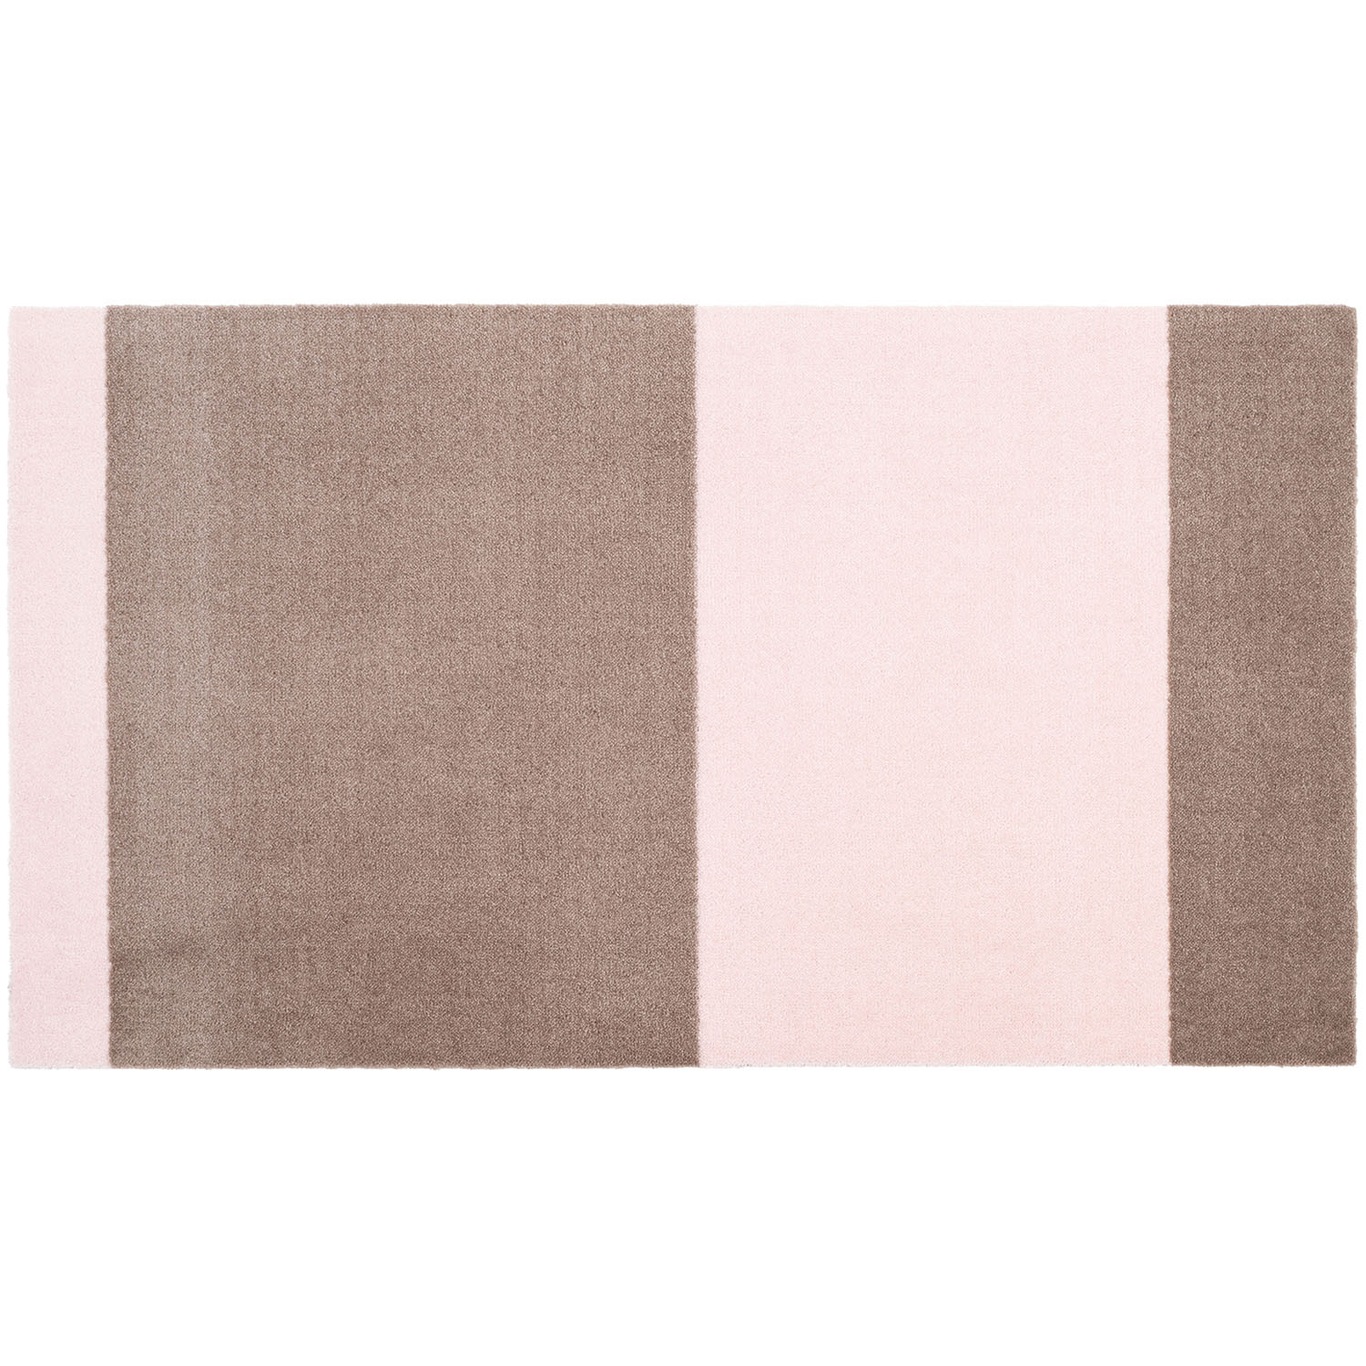 Stripes Tæppe Sand/Light Rose, 67x120 cm